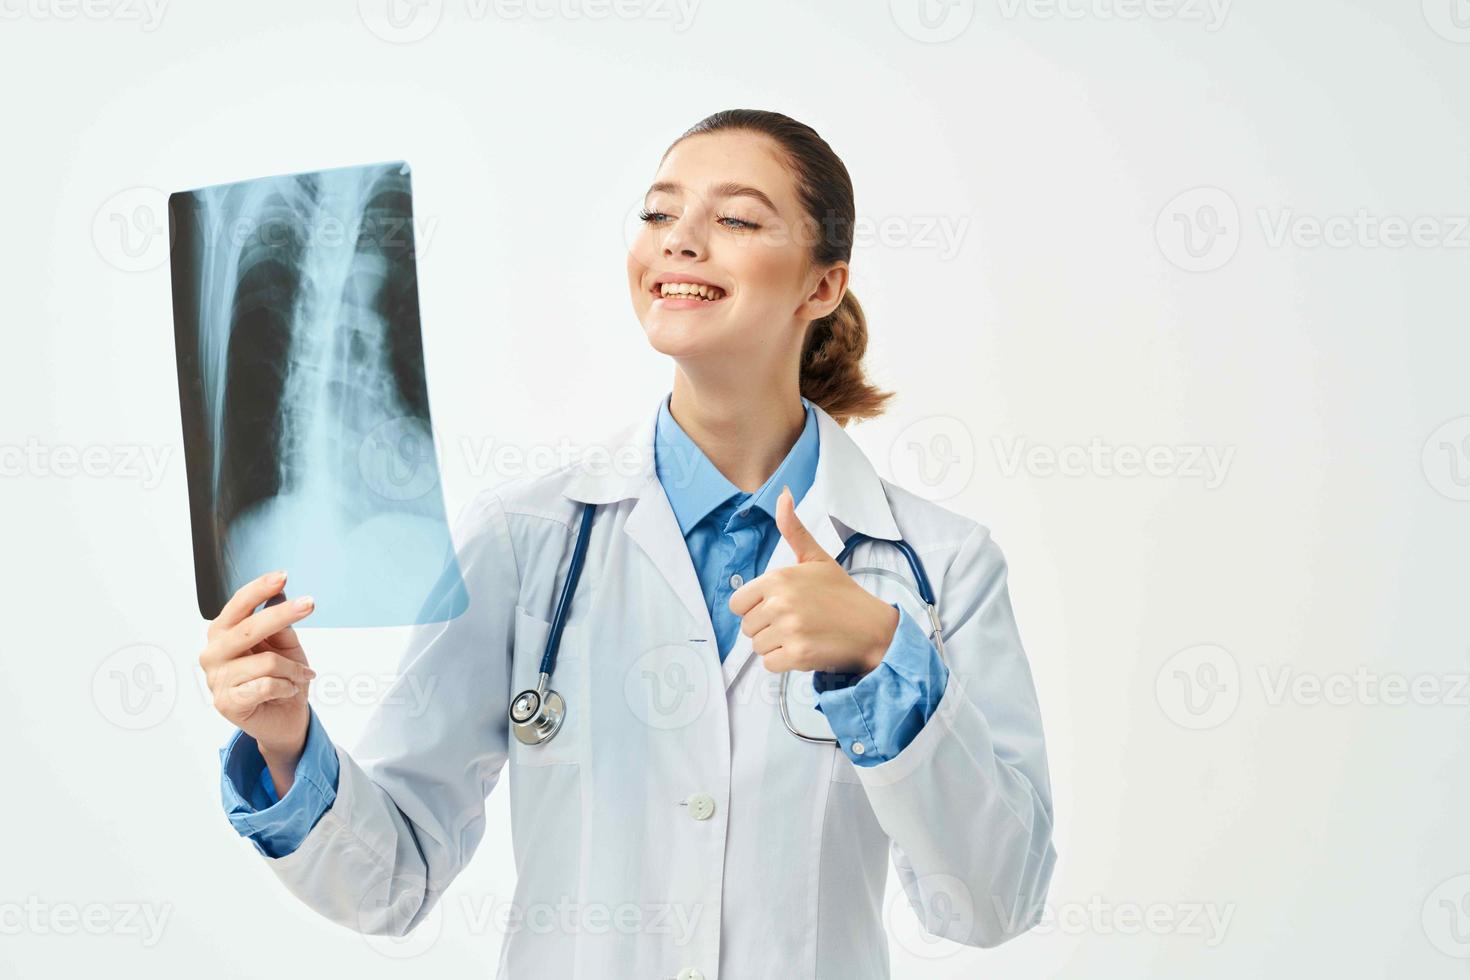 de bonne humeur femme médecin dans blanc manteau radiographie émotion diagnostic photo